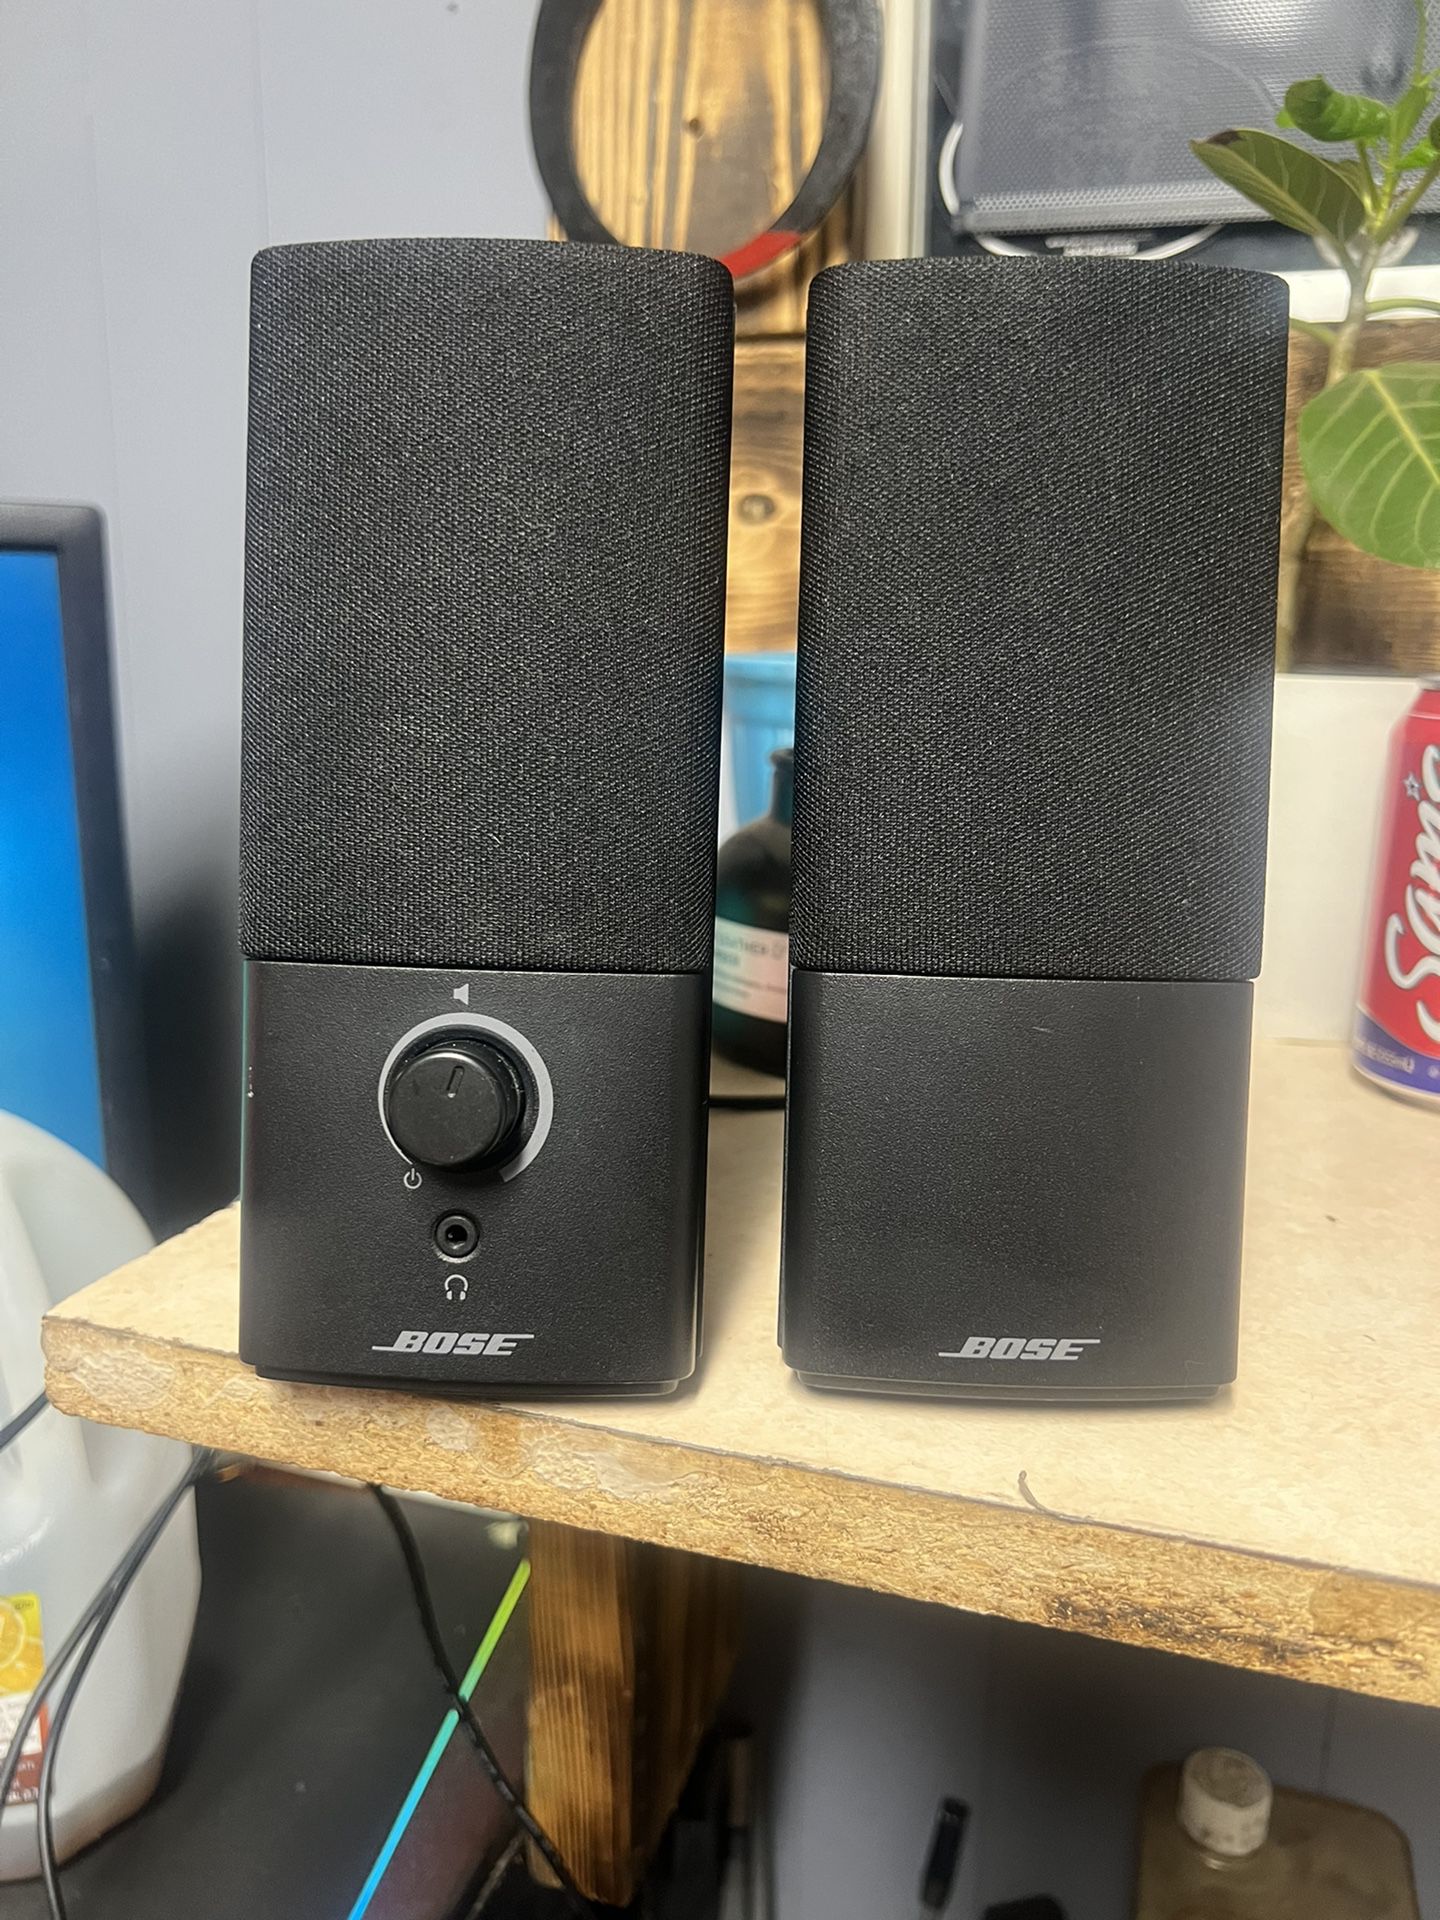 Bose Computer Speakers (loud)